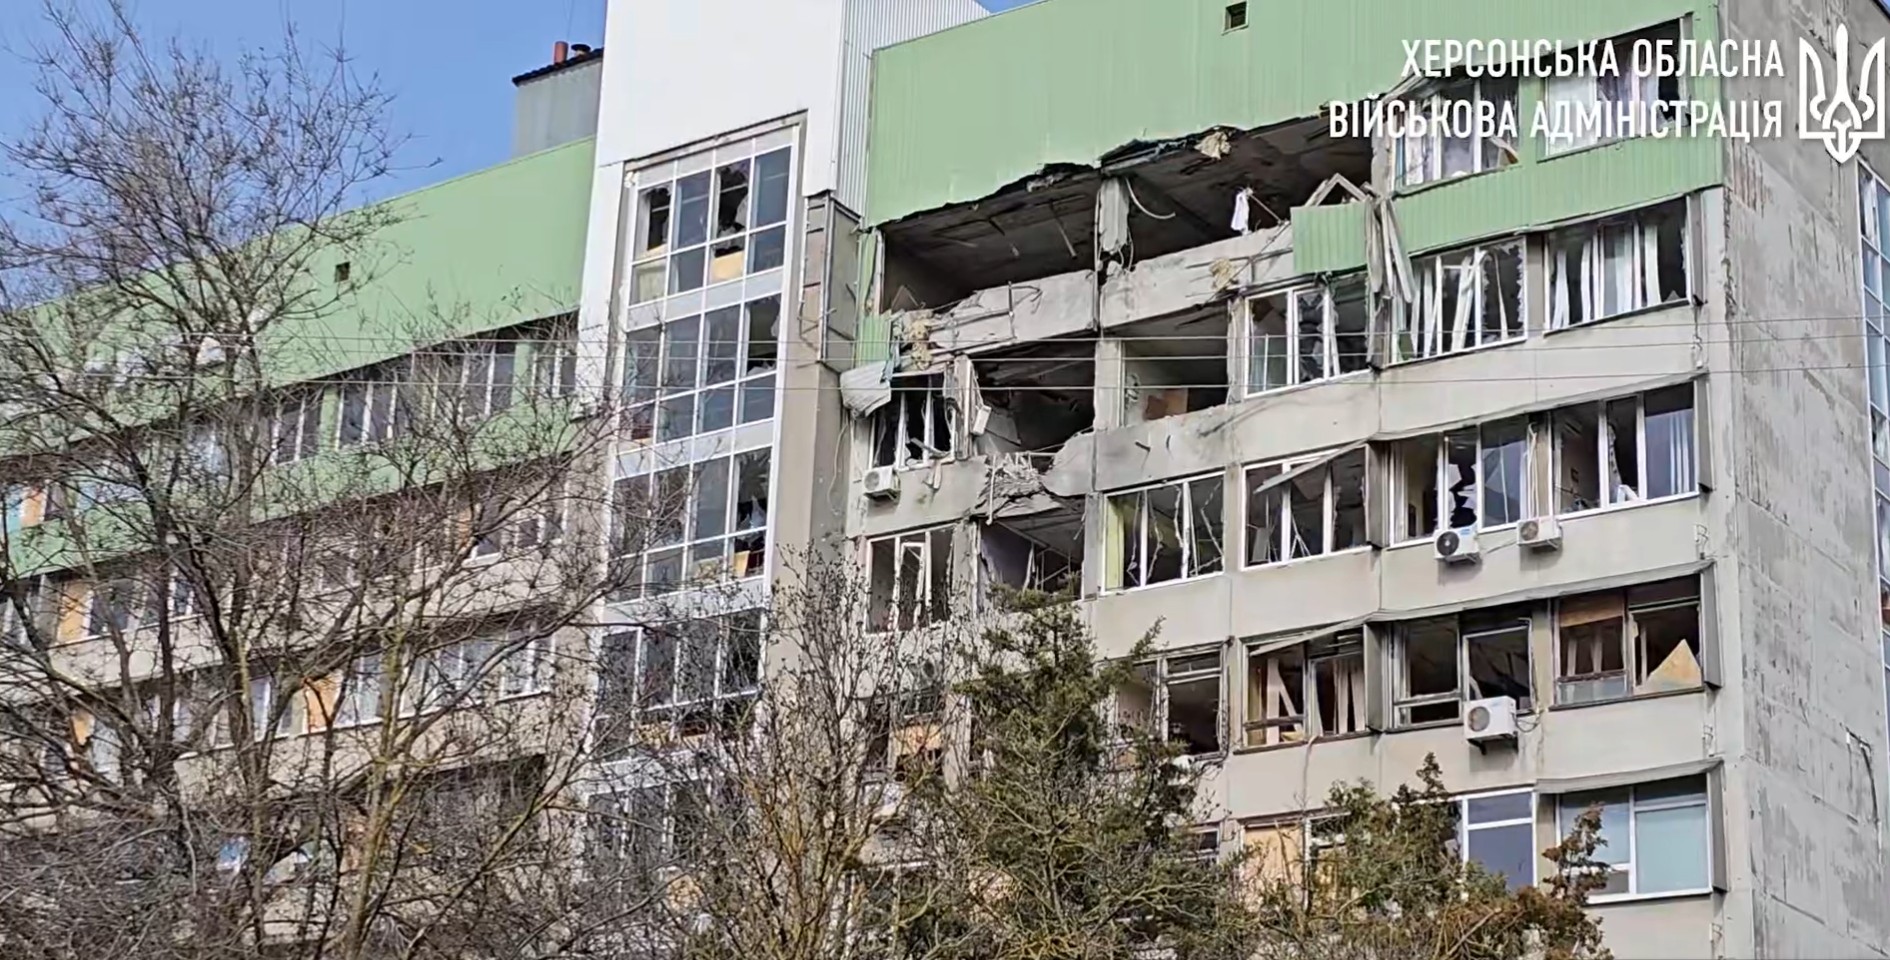 Черговий удар окупантів по ХДУ – за 2 роки пошкоджені абсолютно всі будівлі університету